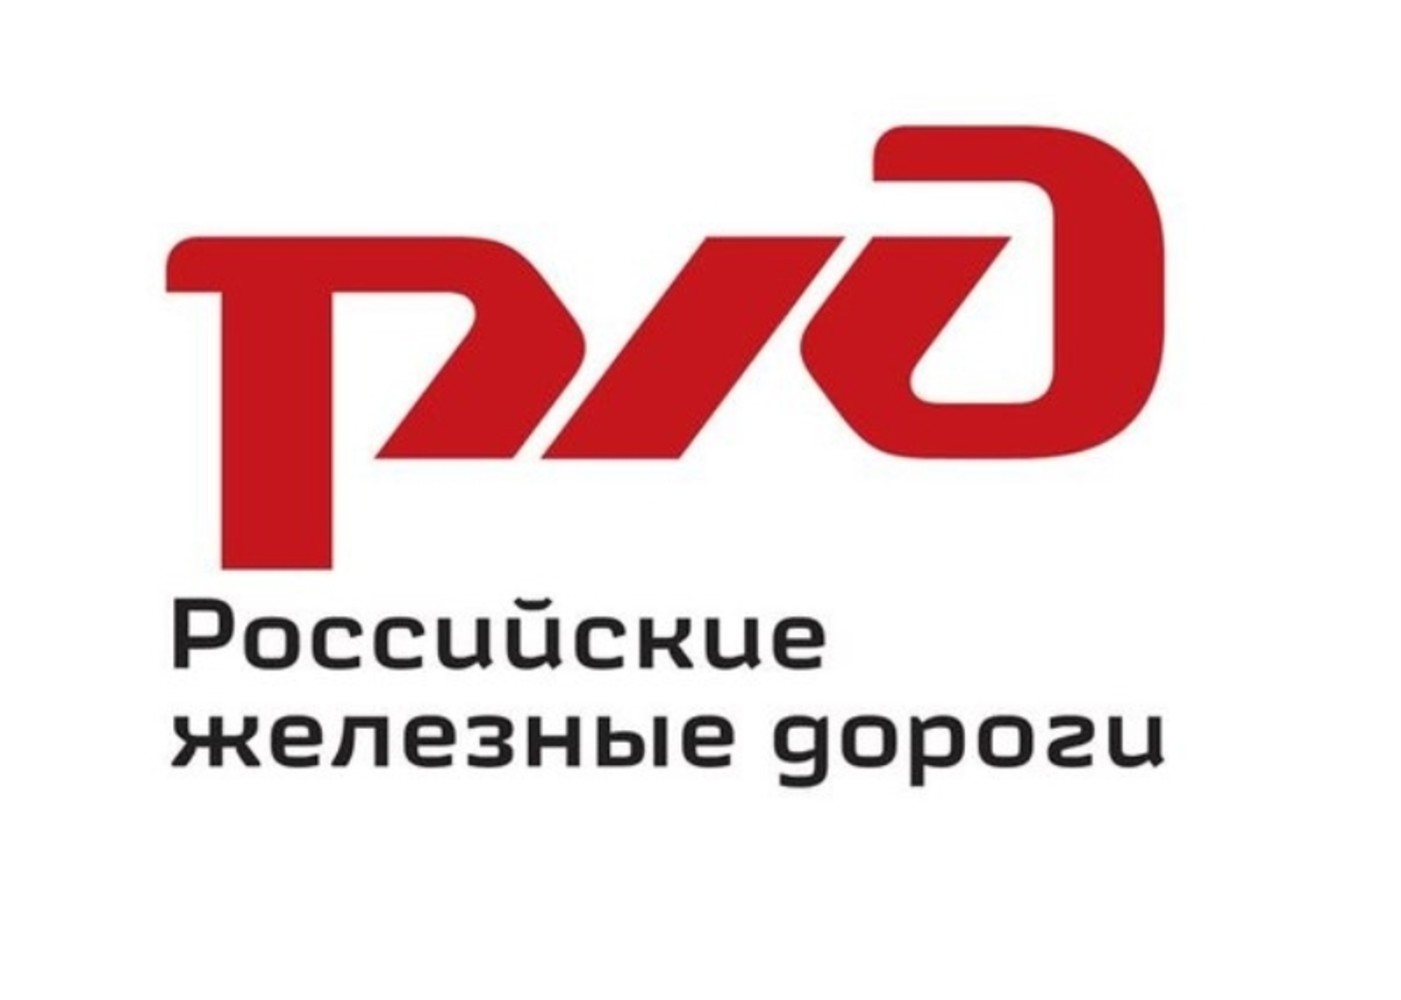 Российские железные дороги лого